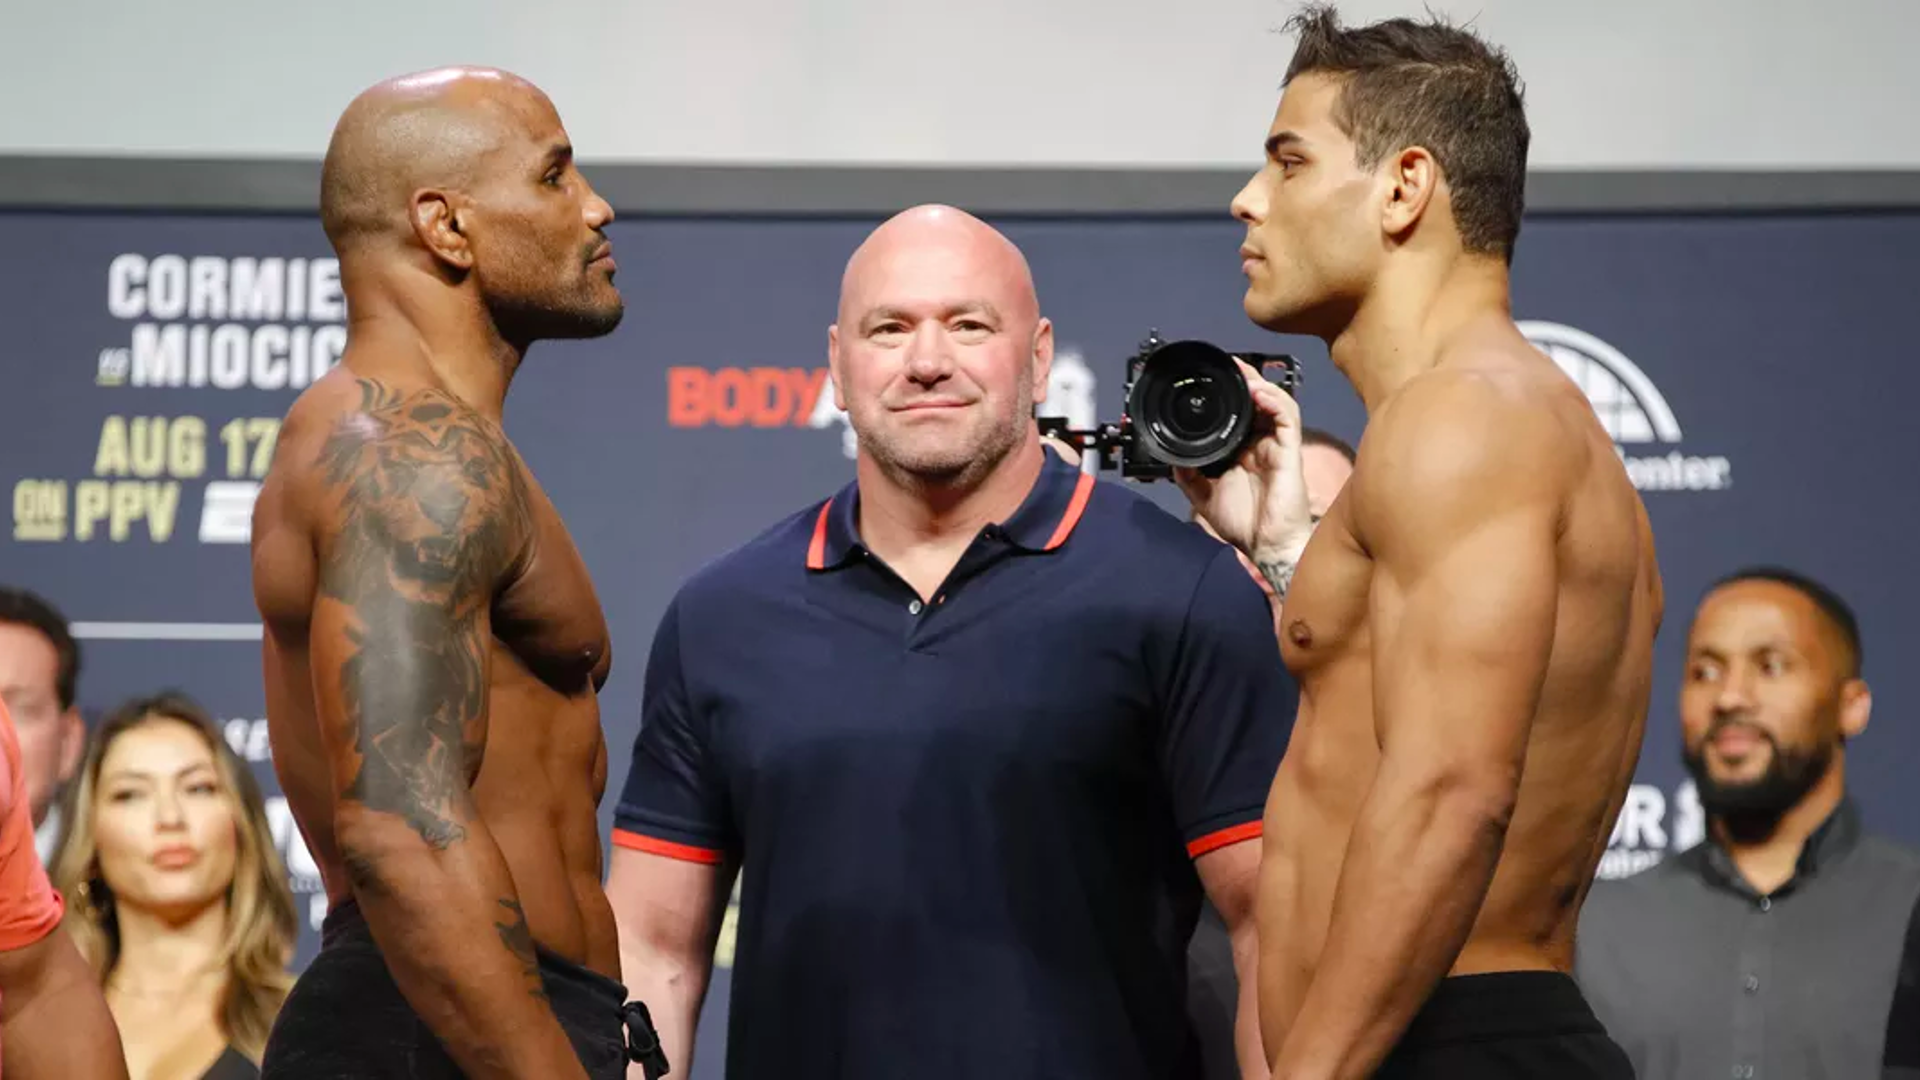 In dem Bild sehen sie zwei UFC-Kämpfer. Beide haben eine nach vorne gebeugte Haltung, doch es lässt sich bezweifeln ob beide Herren Schulterschmerzen haben (auf jeden Fall vor dem Kampf nicht😉)